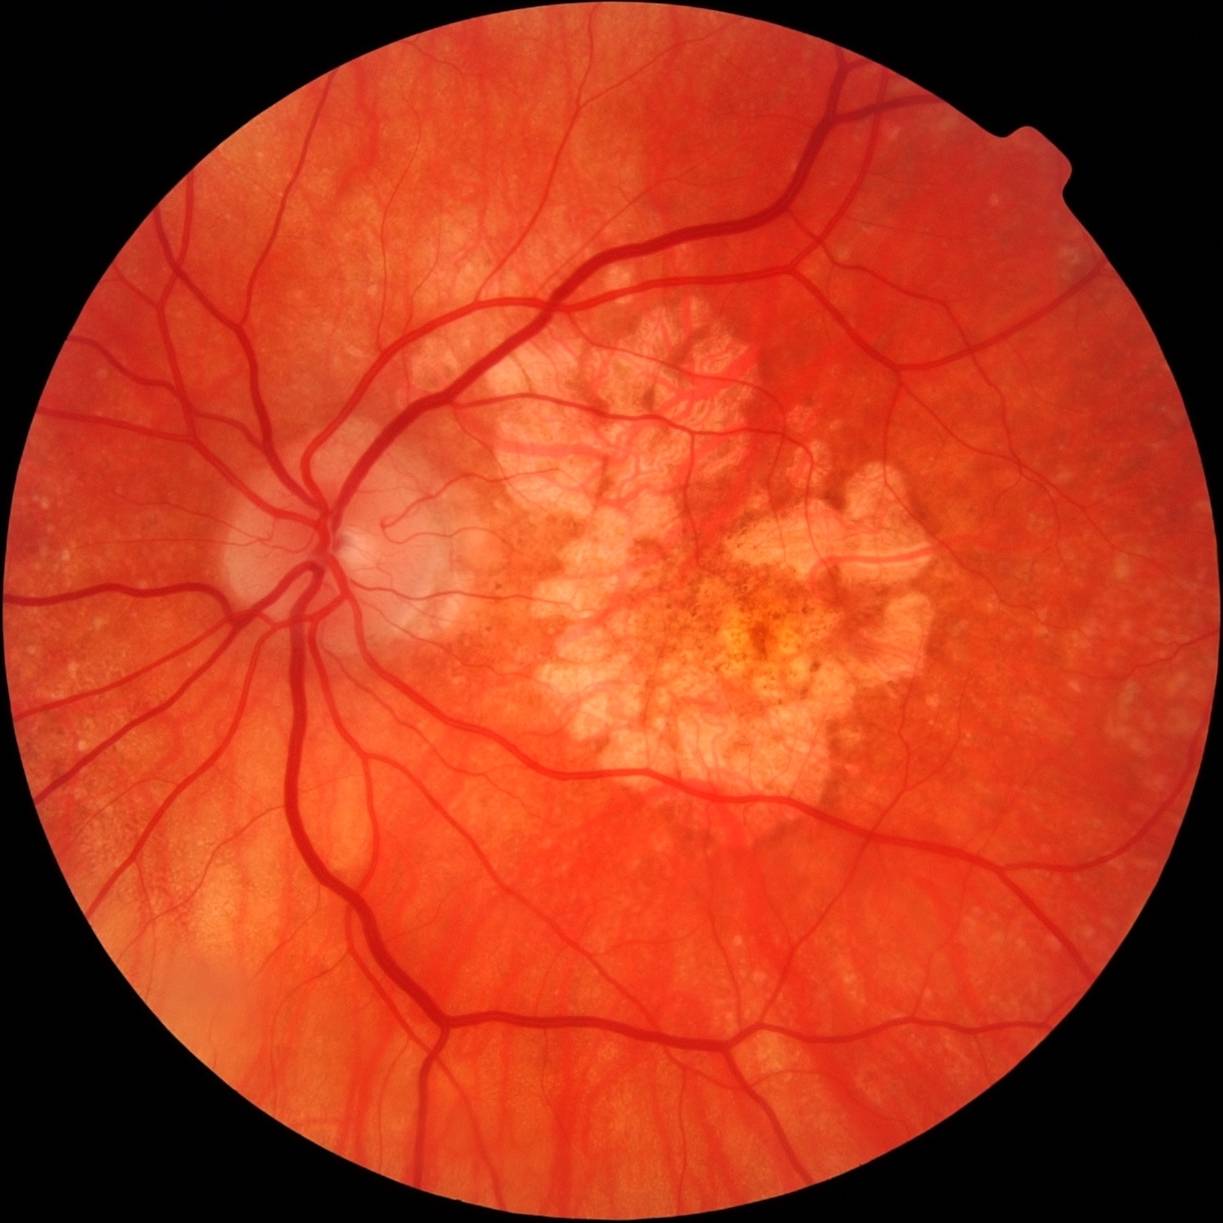 Дистрофия сетчатки глаза: что это такое, опасно ли это, причины развития, факторы риска, лечение и профилактика